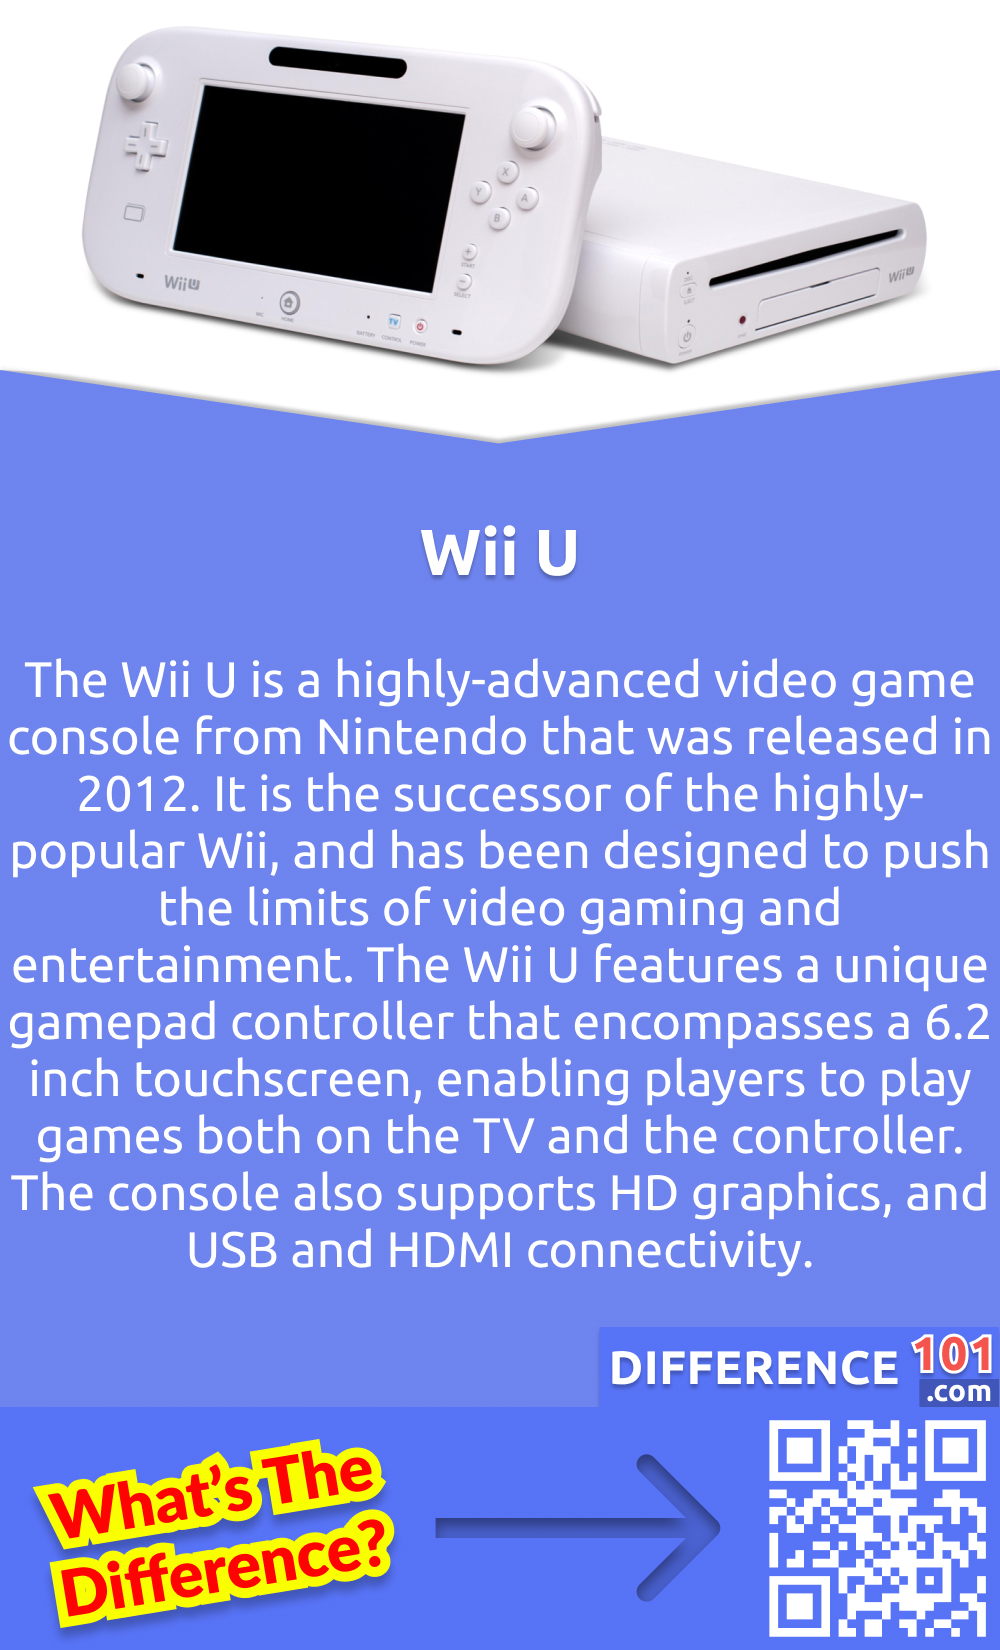 Die Wii U ist eine hochmoderne Videospielkonsole von Nintendo, die 2012 auf den Markt kam. Sie ist der Nachfolger der sehr beliebten Wii und wurde entwickelt, um die Grenzen des Videospiels und der Unterhaltung zu erweitern. Die Wii U verfügt über einen einzigartigen Gamepad-Controller, der einen 6,2-Zoll-Touchscreen umfasst und es den Spielern ermöglicht, Spiele sowohl auf dem Fernseher als auch auf dem Controller zu spielen. Die Konsole unterstützt außerdem HD-Grafik und verfügt über USB- und HDMI-Anschlüsse. Sie ermöglicht es mehreren Spielern, gleichzeitig an Spielen teilzunehmen, wodurch das Multiplayer-Gaming-Erlebnis noch verbessert wird. Mit ihren innovativen Funktionen und der hochmodernen Technologie ist die Wii U eine deutliche Verbesserung gegenüber der Wii und hat sich zu einer sehr gefragten Spielkonsole unter den Spielern entwickelt.